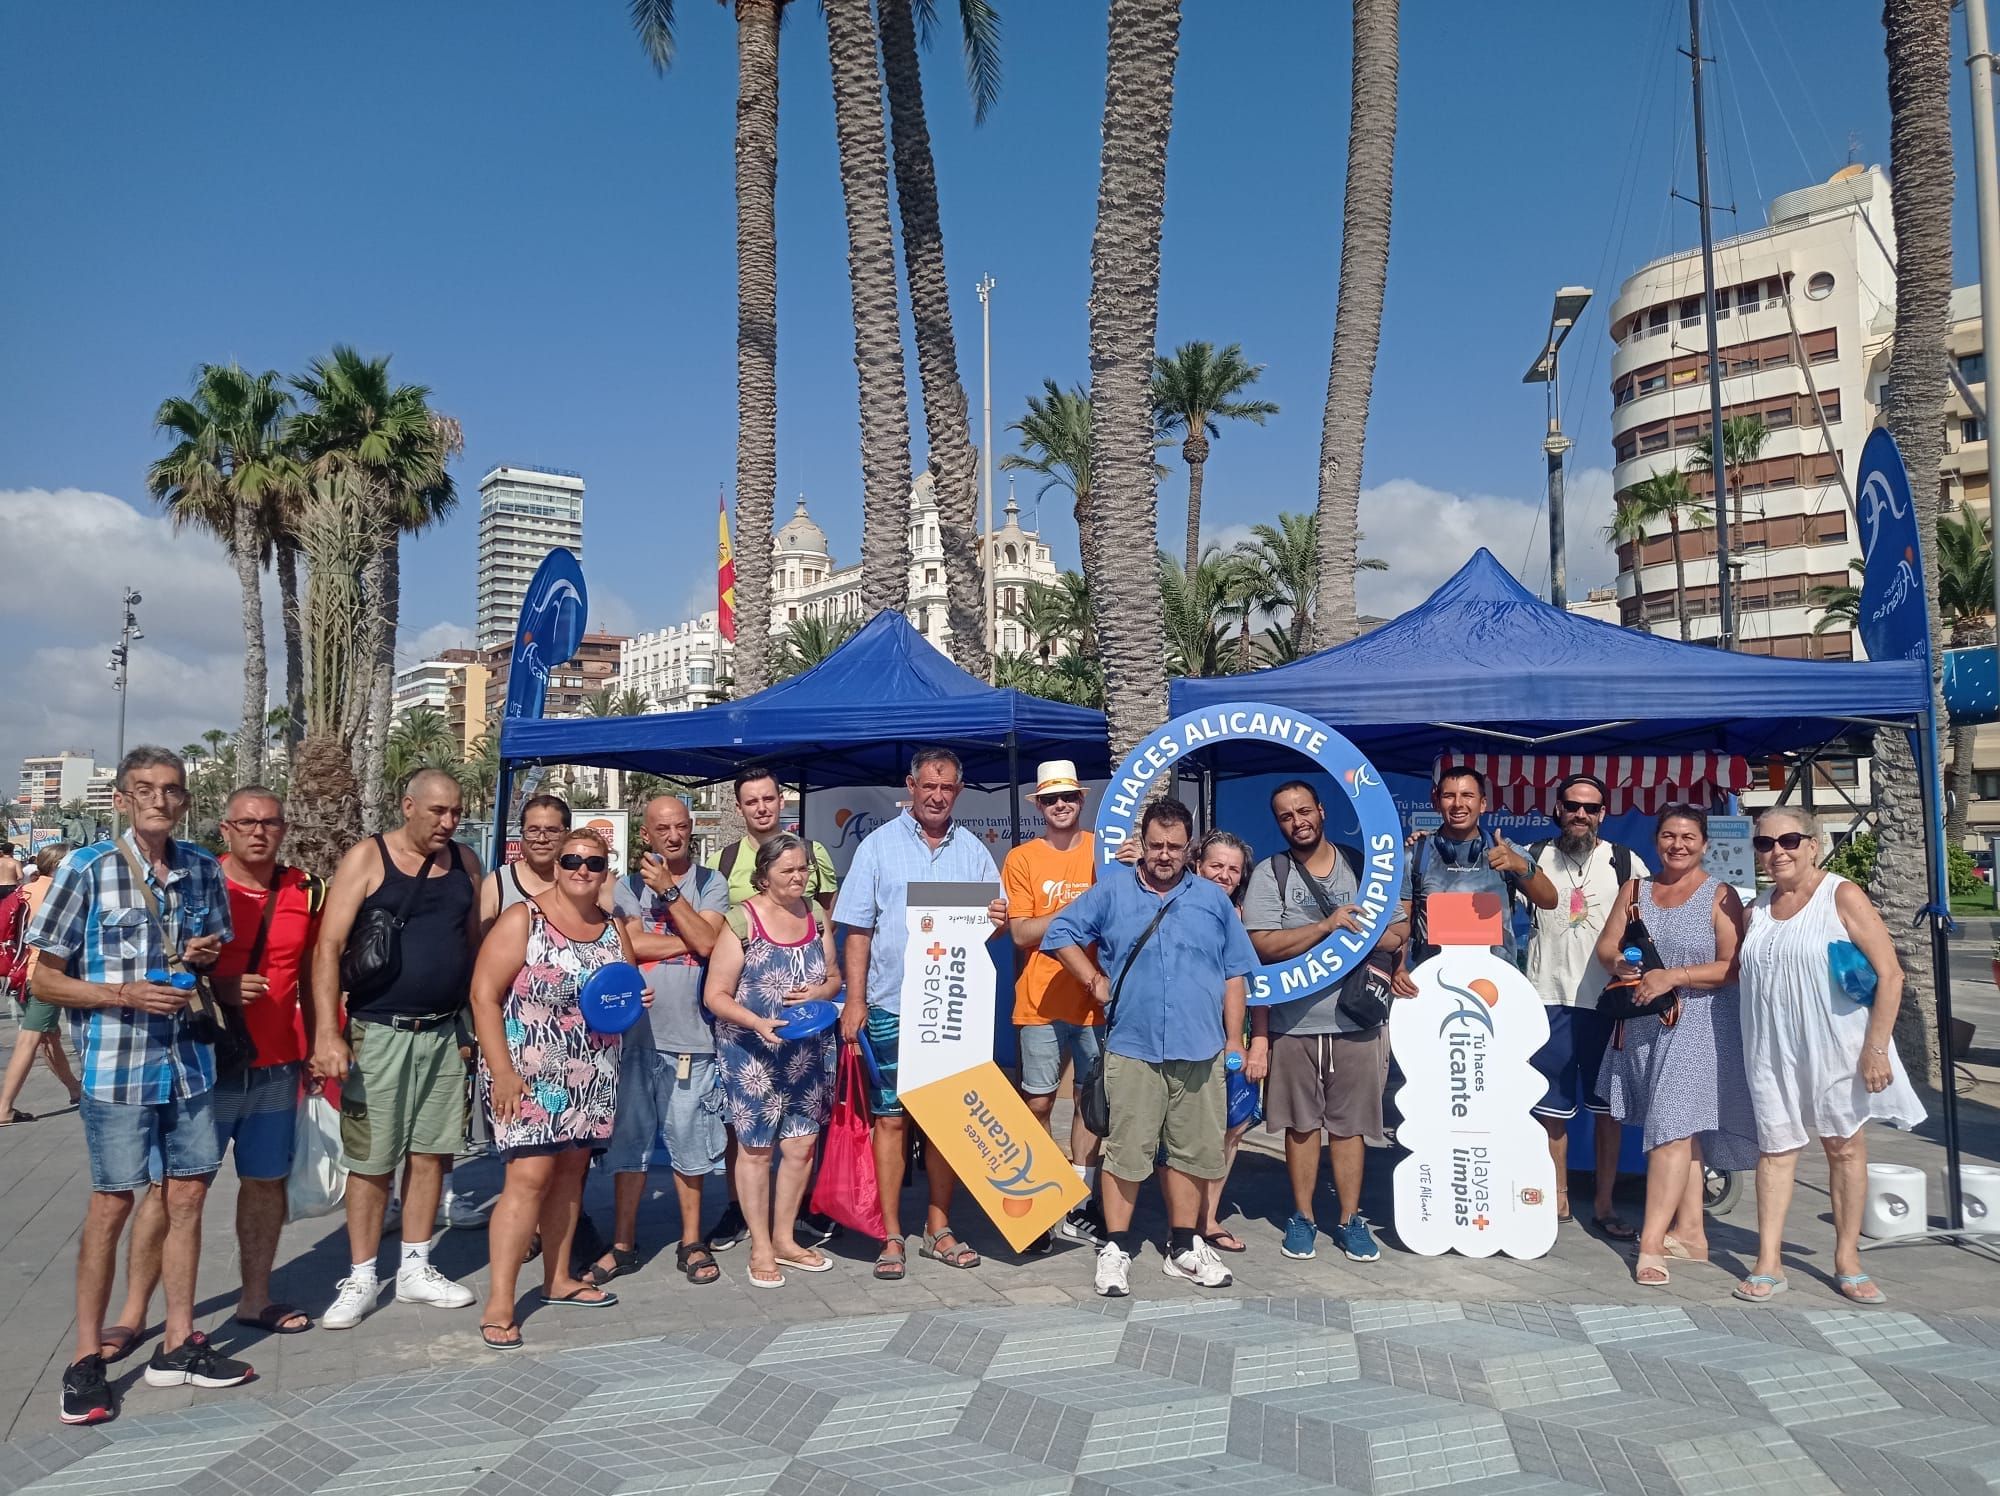 El programa de concienciación Tú haces Alicante ha informado a más de 3500 personas en las playas alicantinas